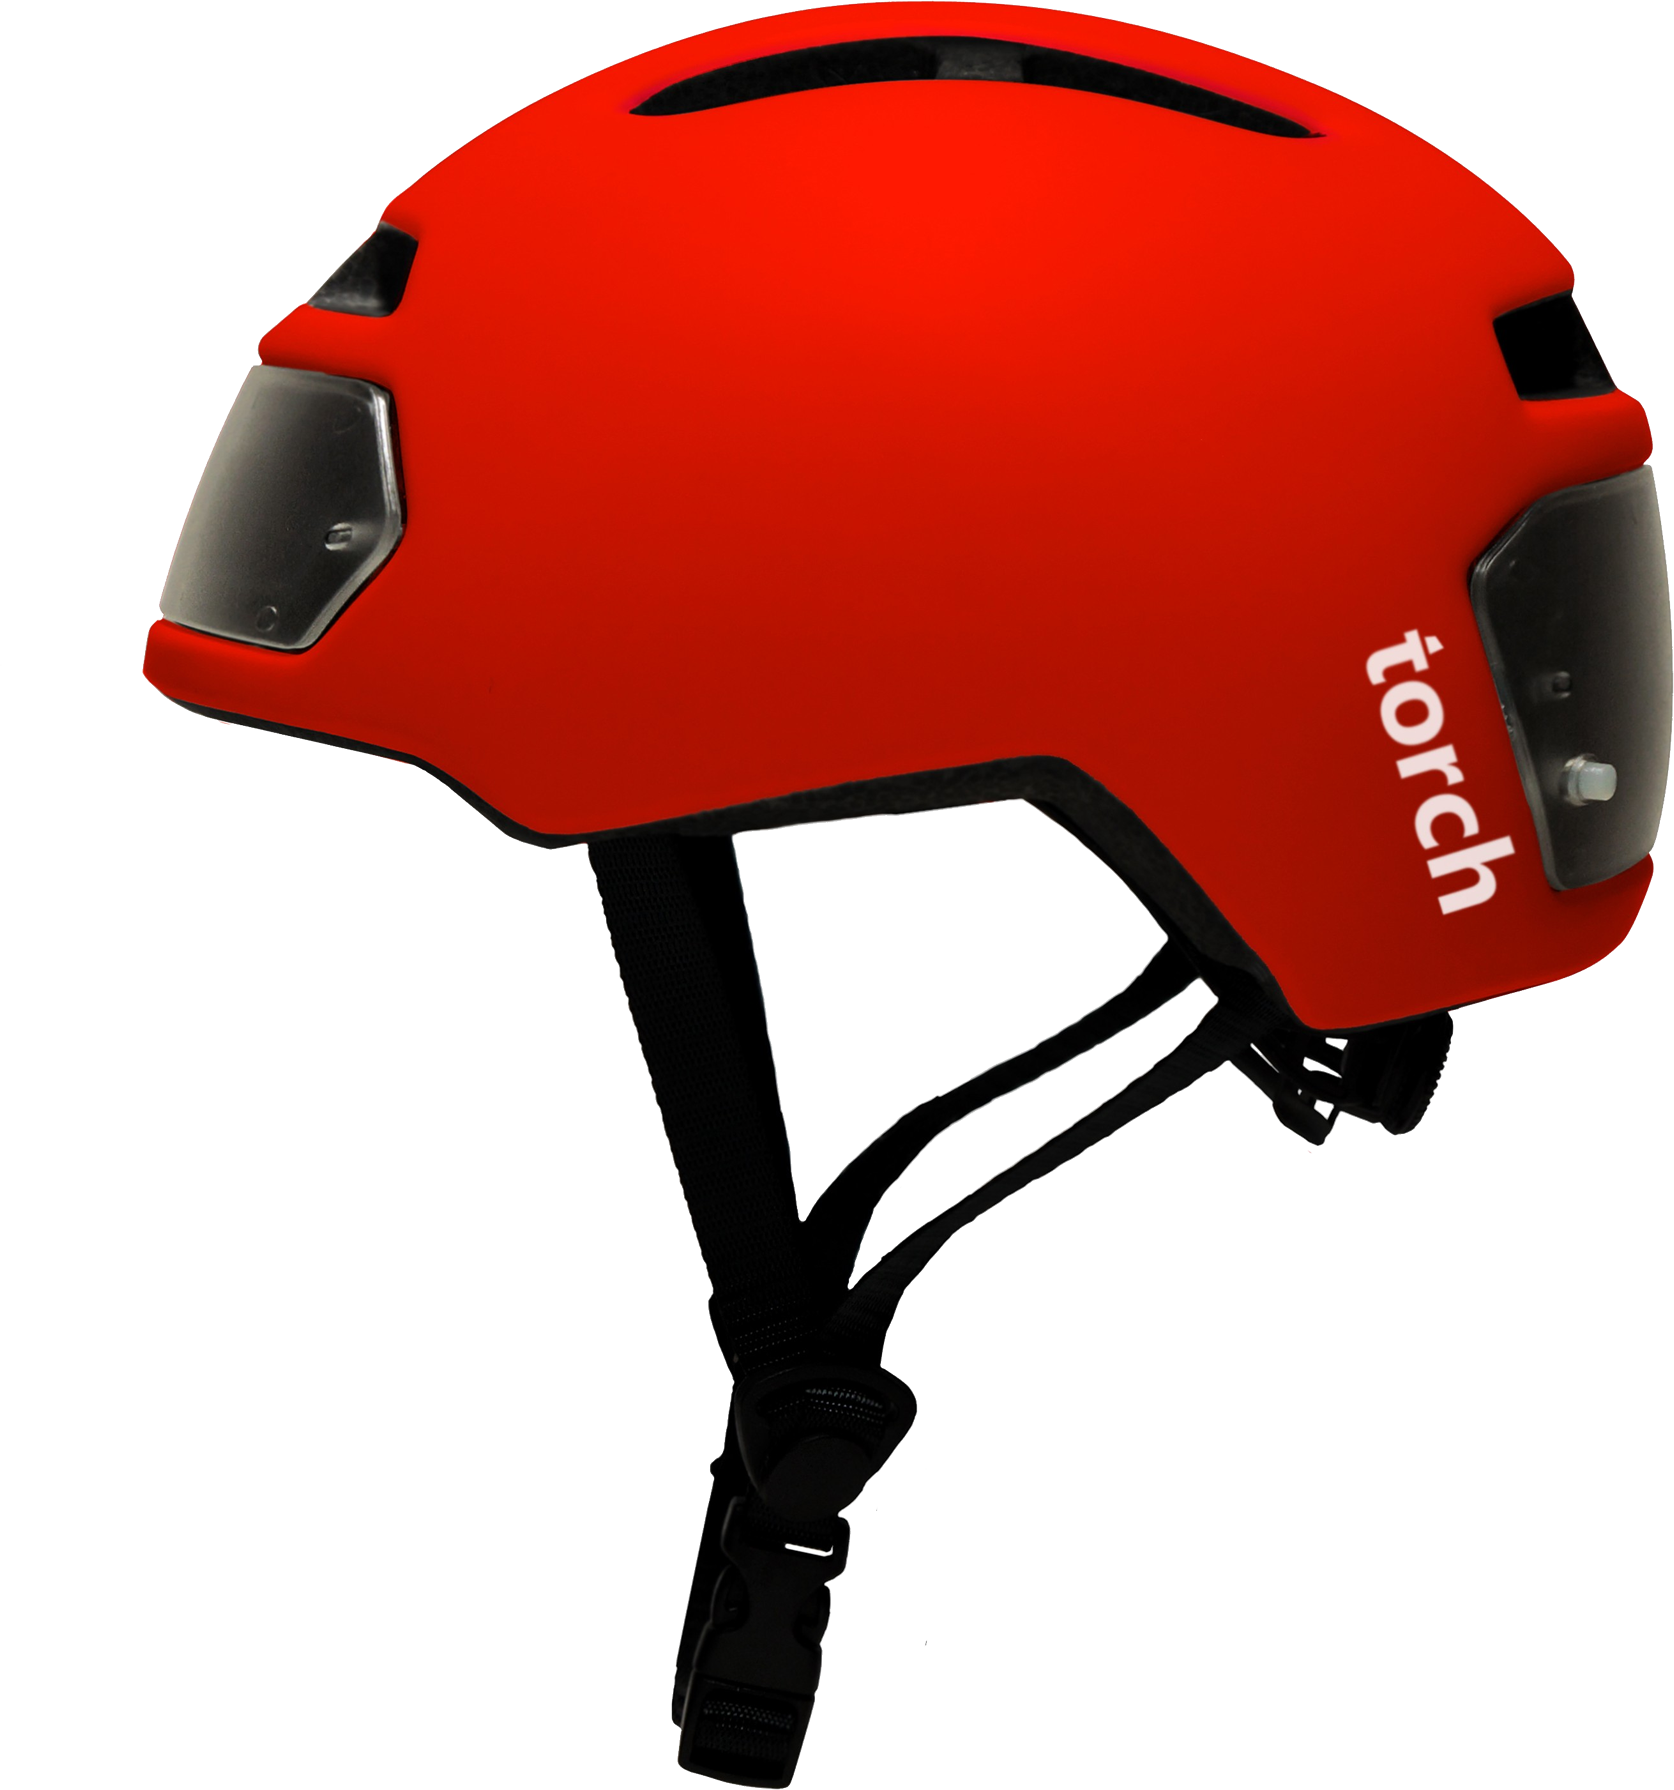 Bicycle Helmet Png Image - Bike Helmet Side View Clipart (1674x1790), Png Download